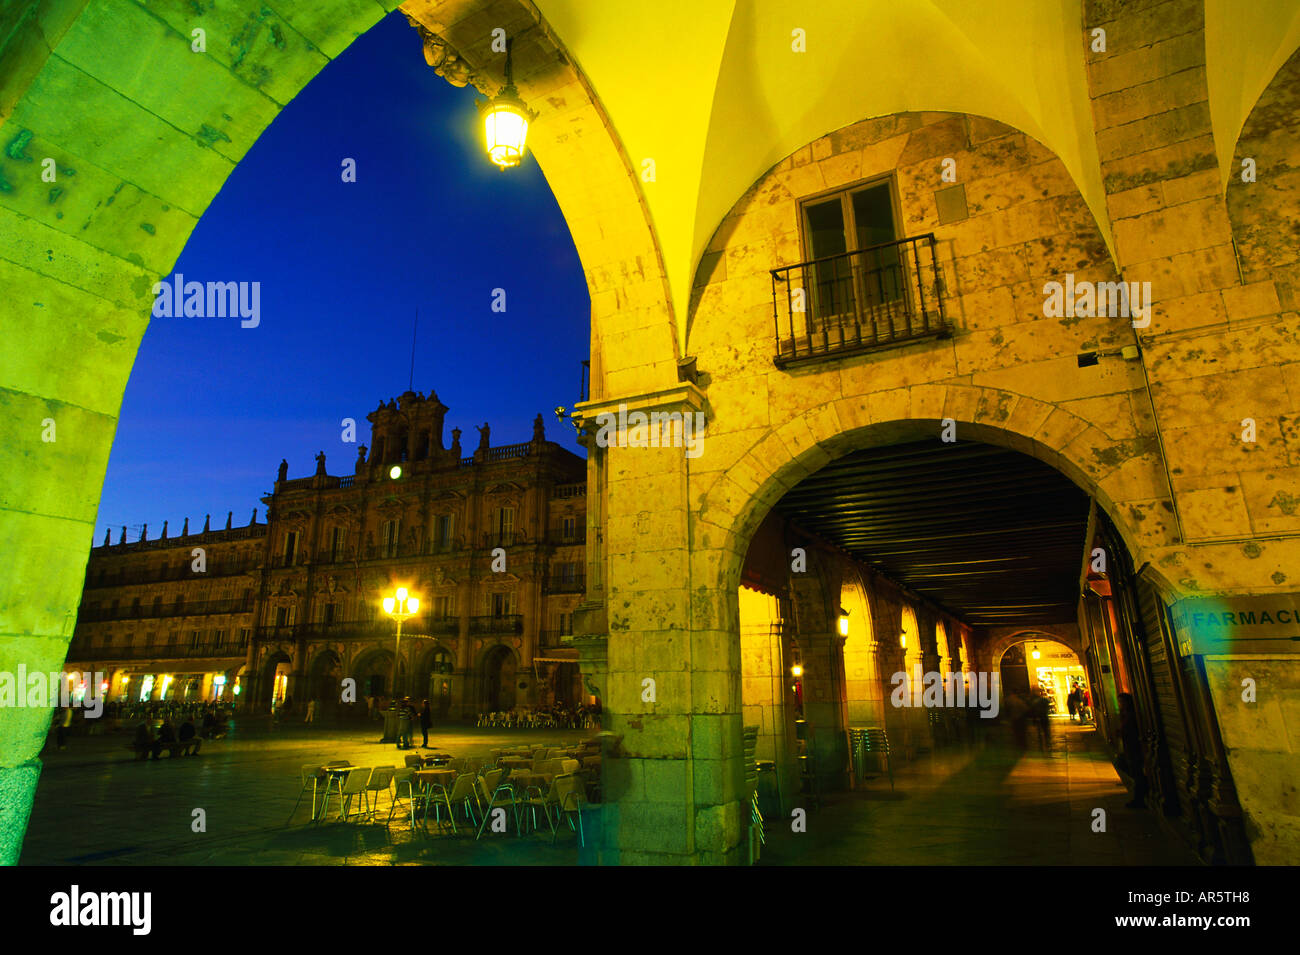 Galerías abovedadas, Plaza Mayor, Salamanca, Castilla y León, España Foto de stock